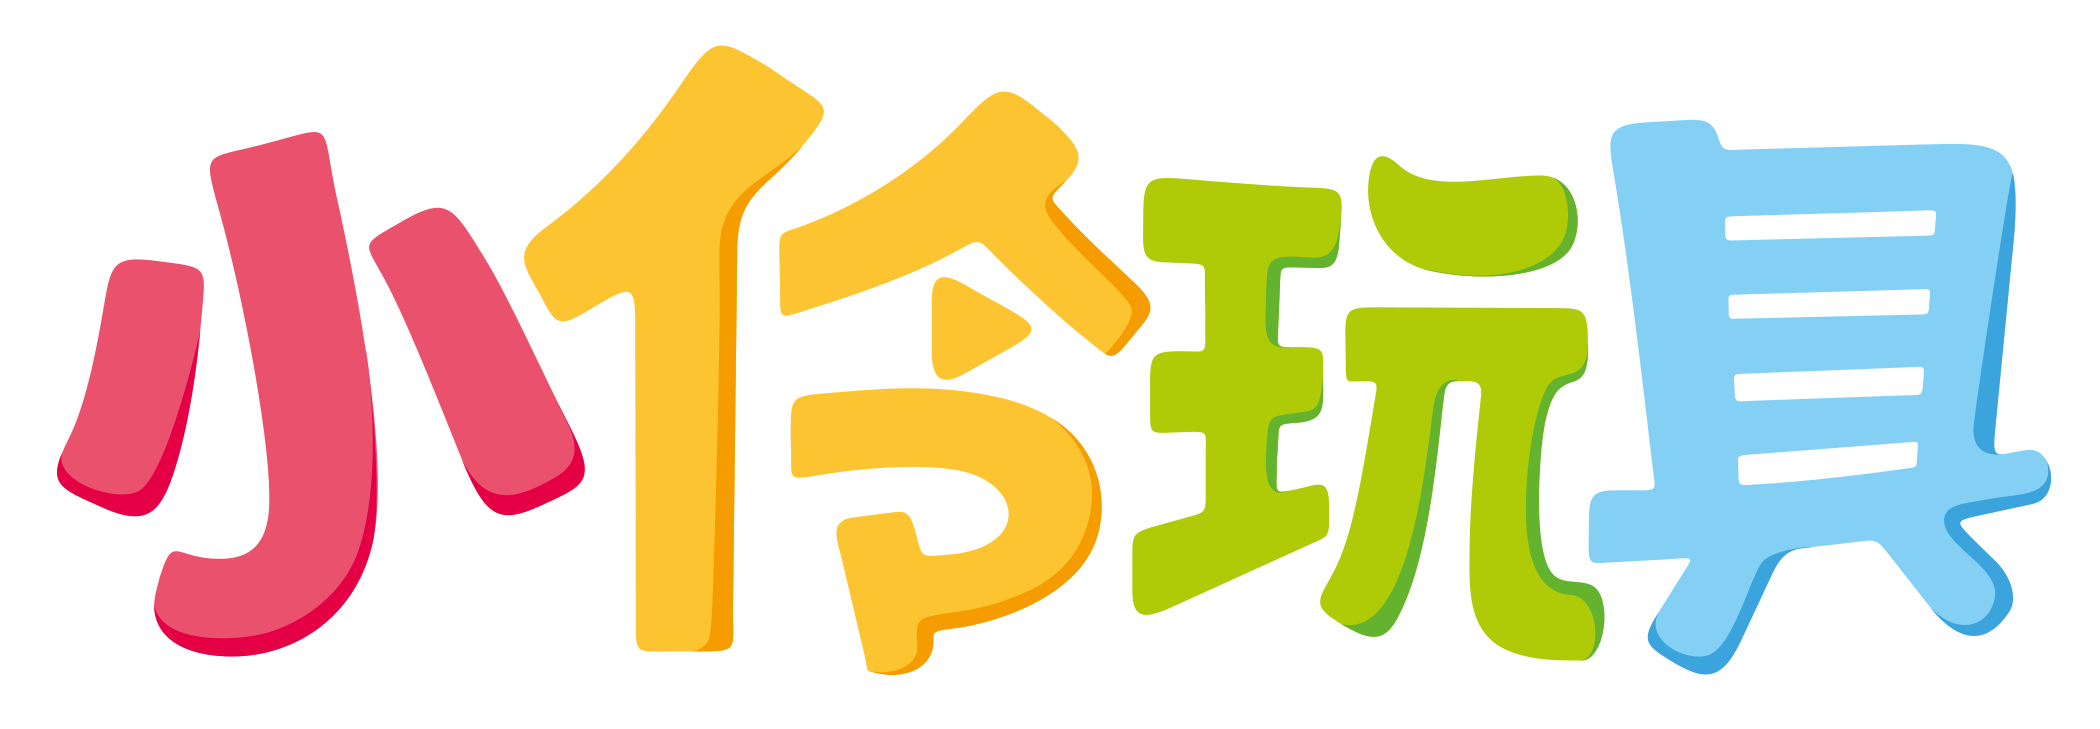 小伶玩具logo-单字彩色.png